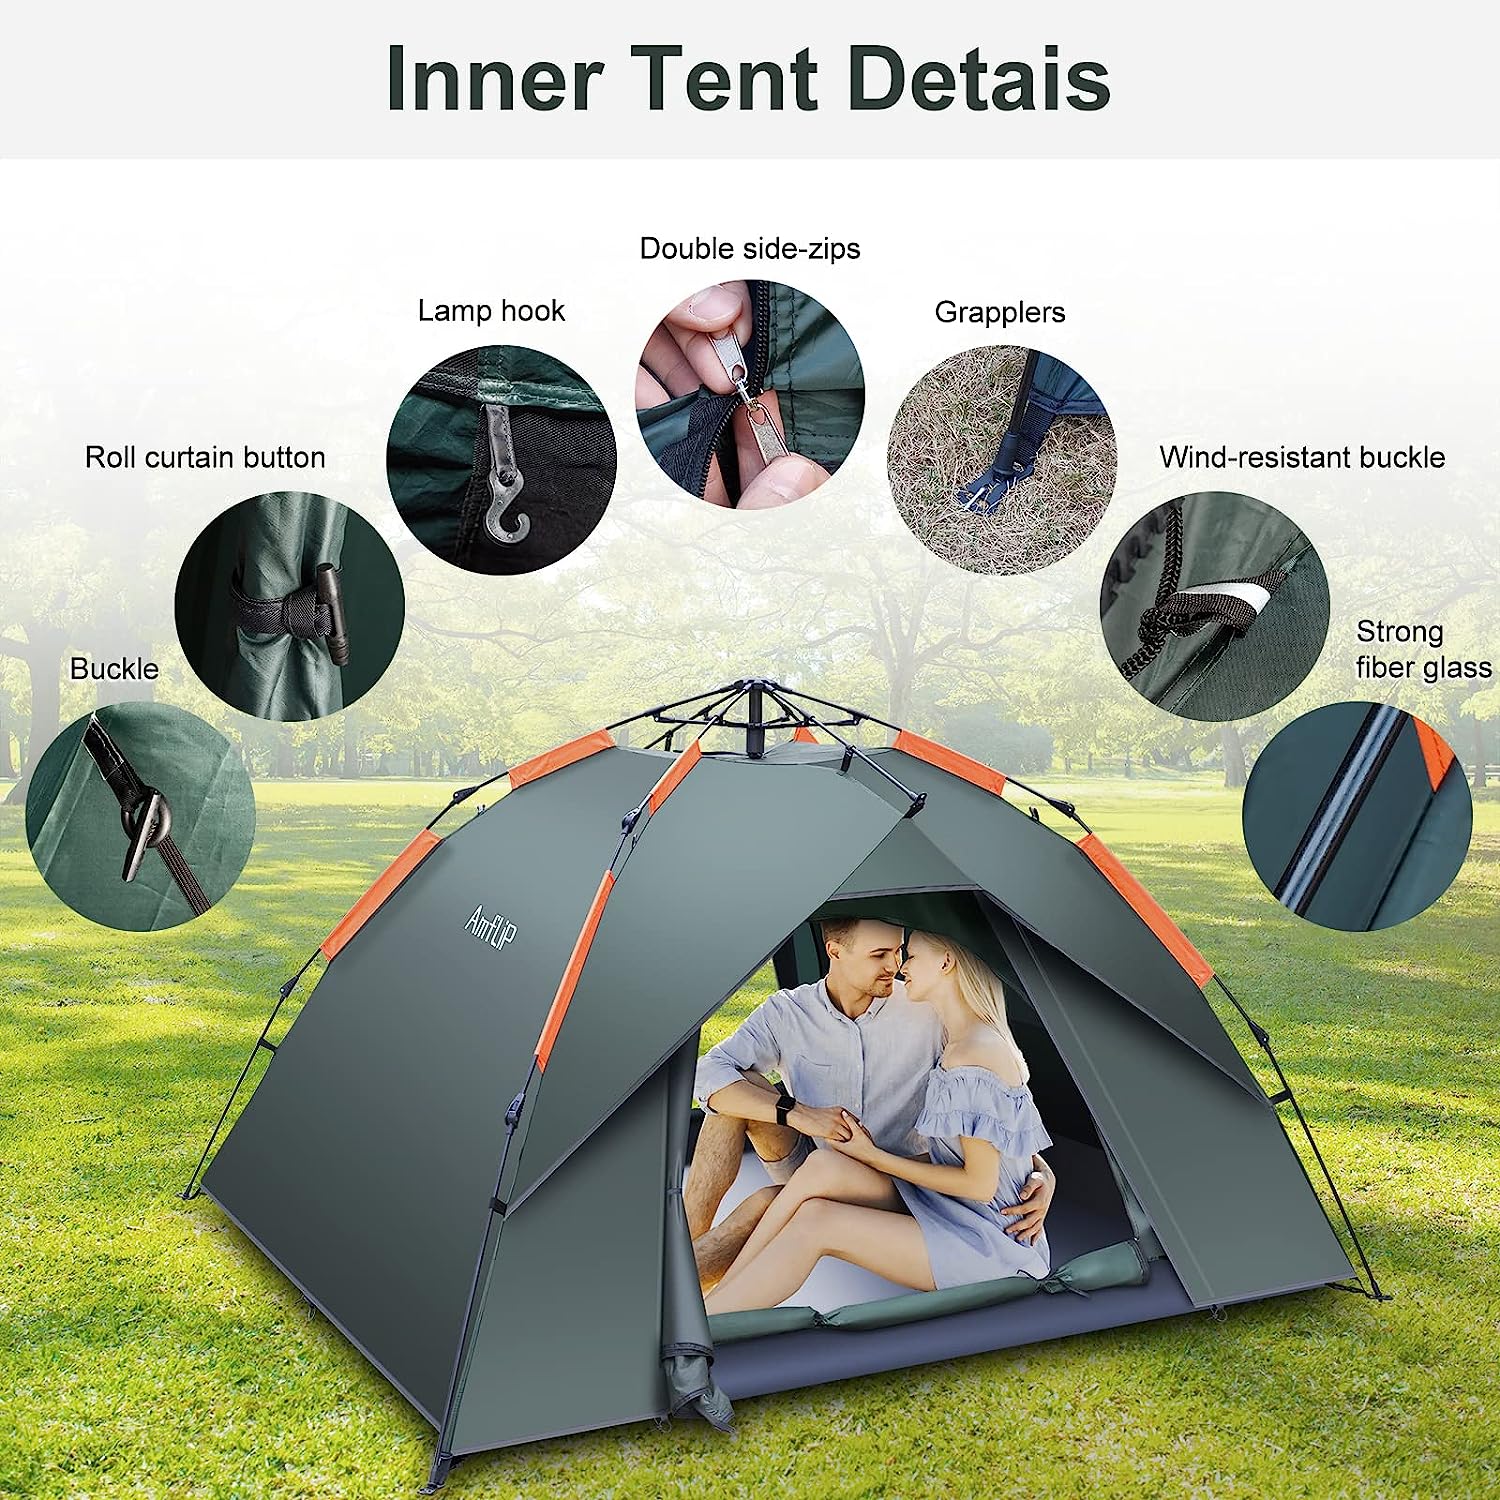 amflip dome tent details